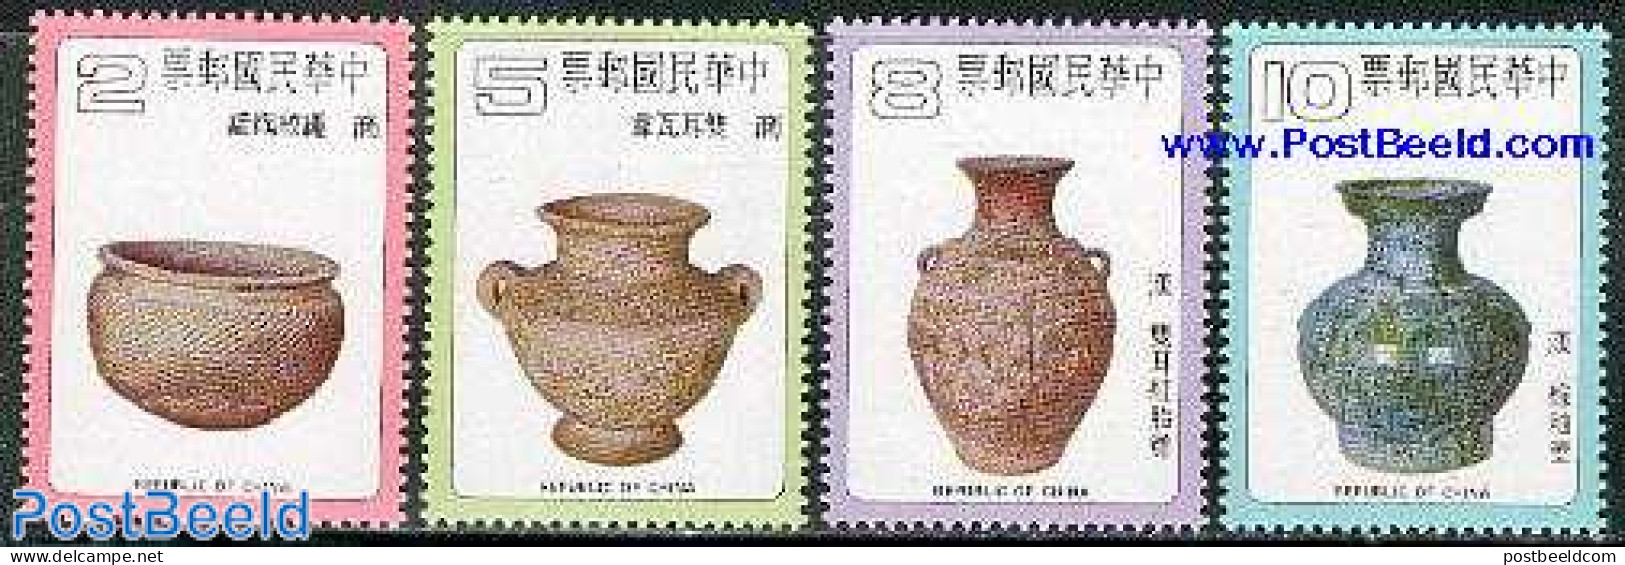 Taiwan 1979 Vases 4v, Mint NH, Art - Art & Antique Objects - Ceramics - Porcellana